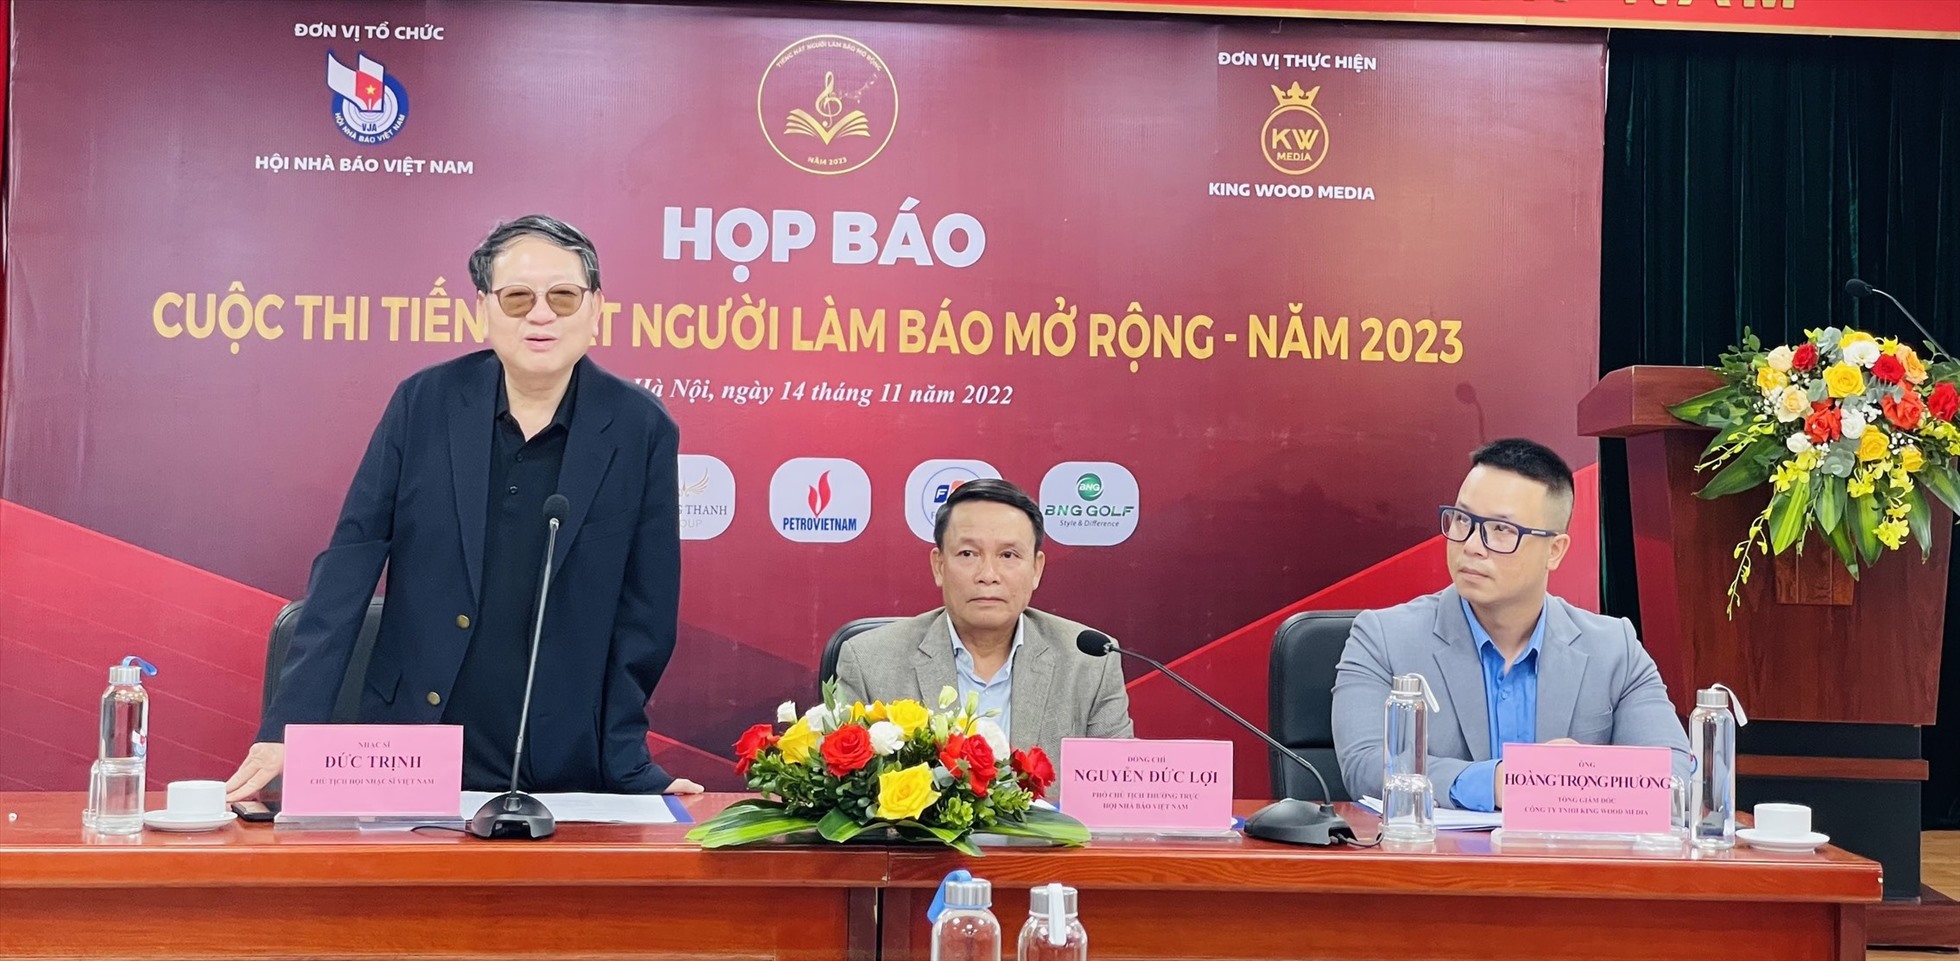 Chủ tịch Hội nhạc sĩ Việt Nam Đức Trịnh thông tin tại buổi họp báo. Ảnh: Hương Mai